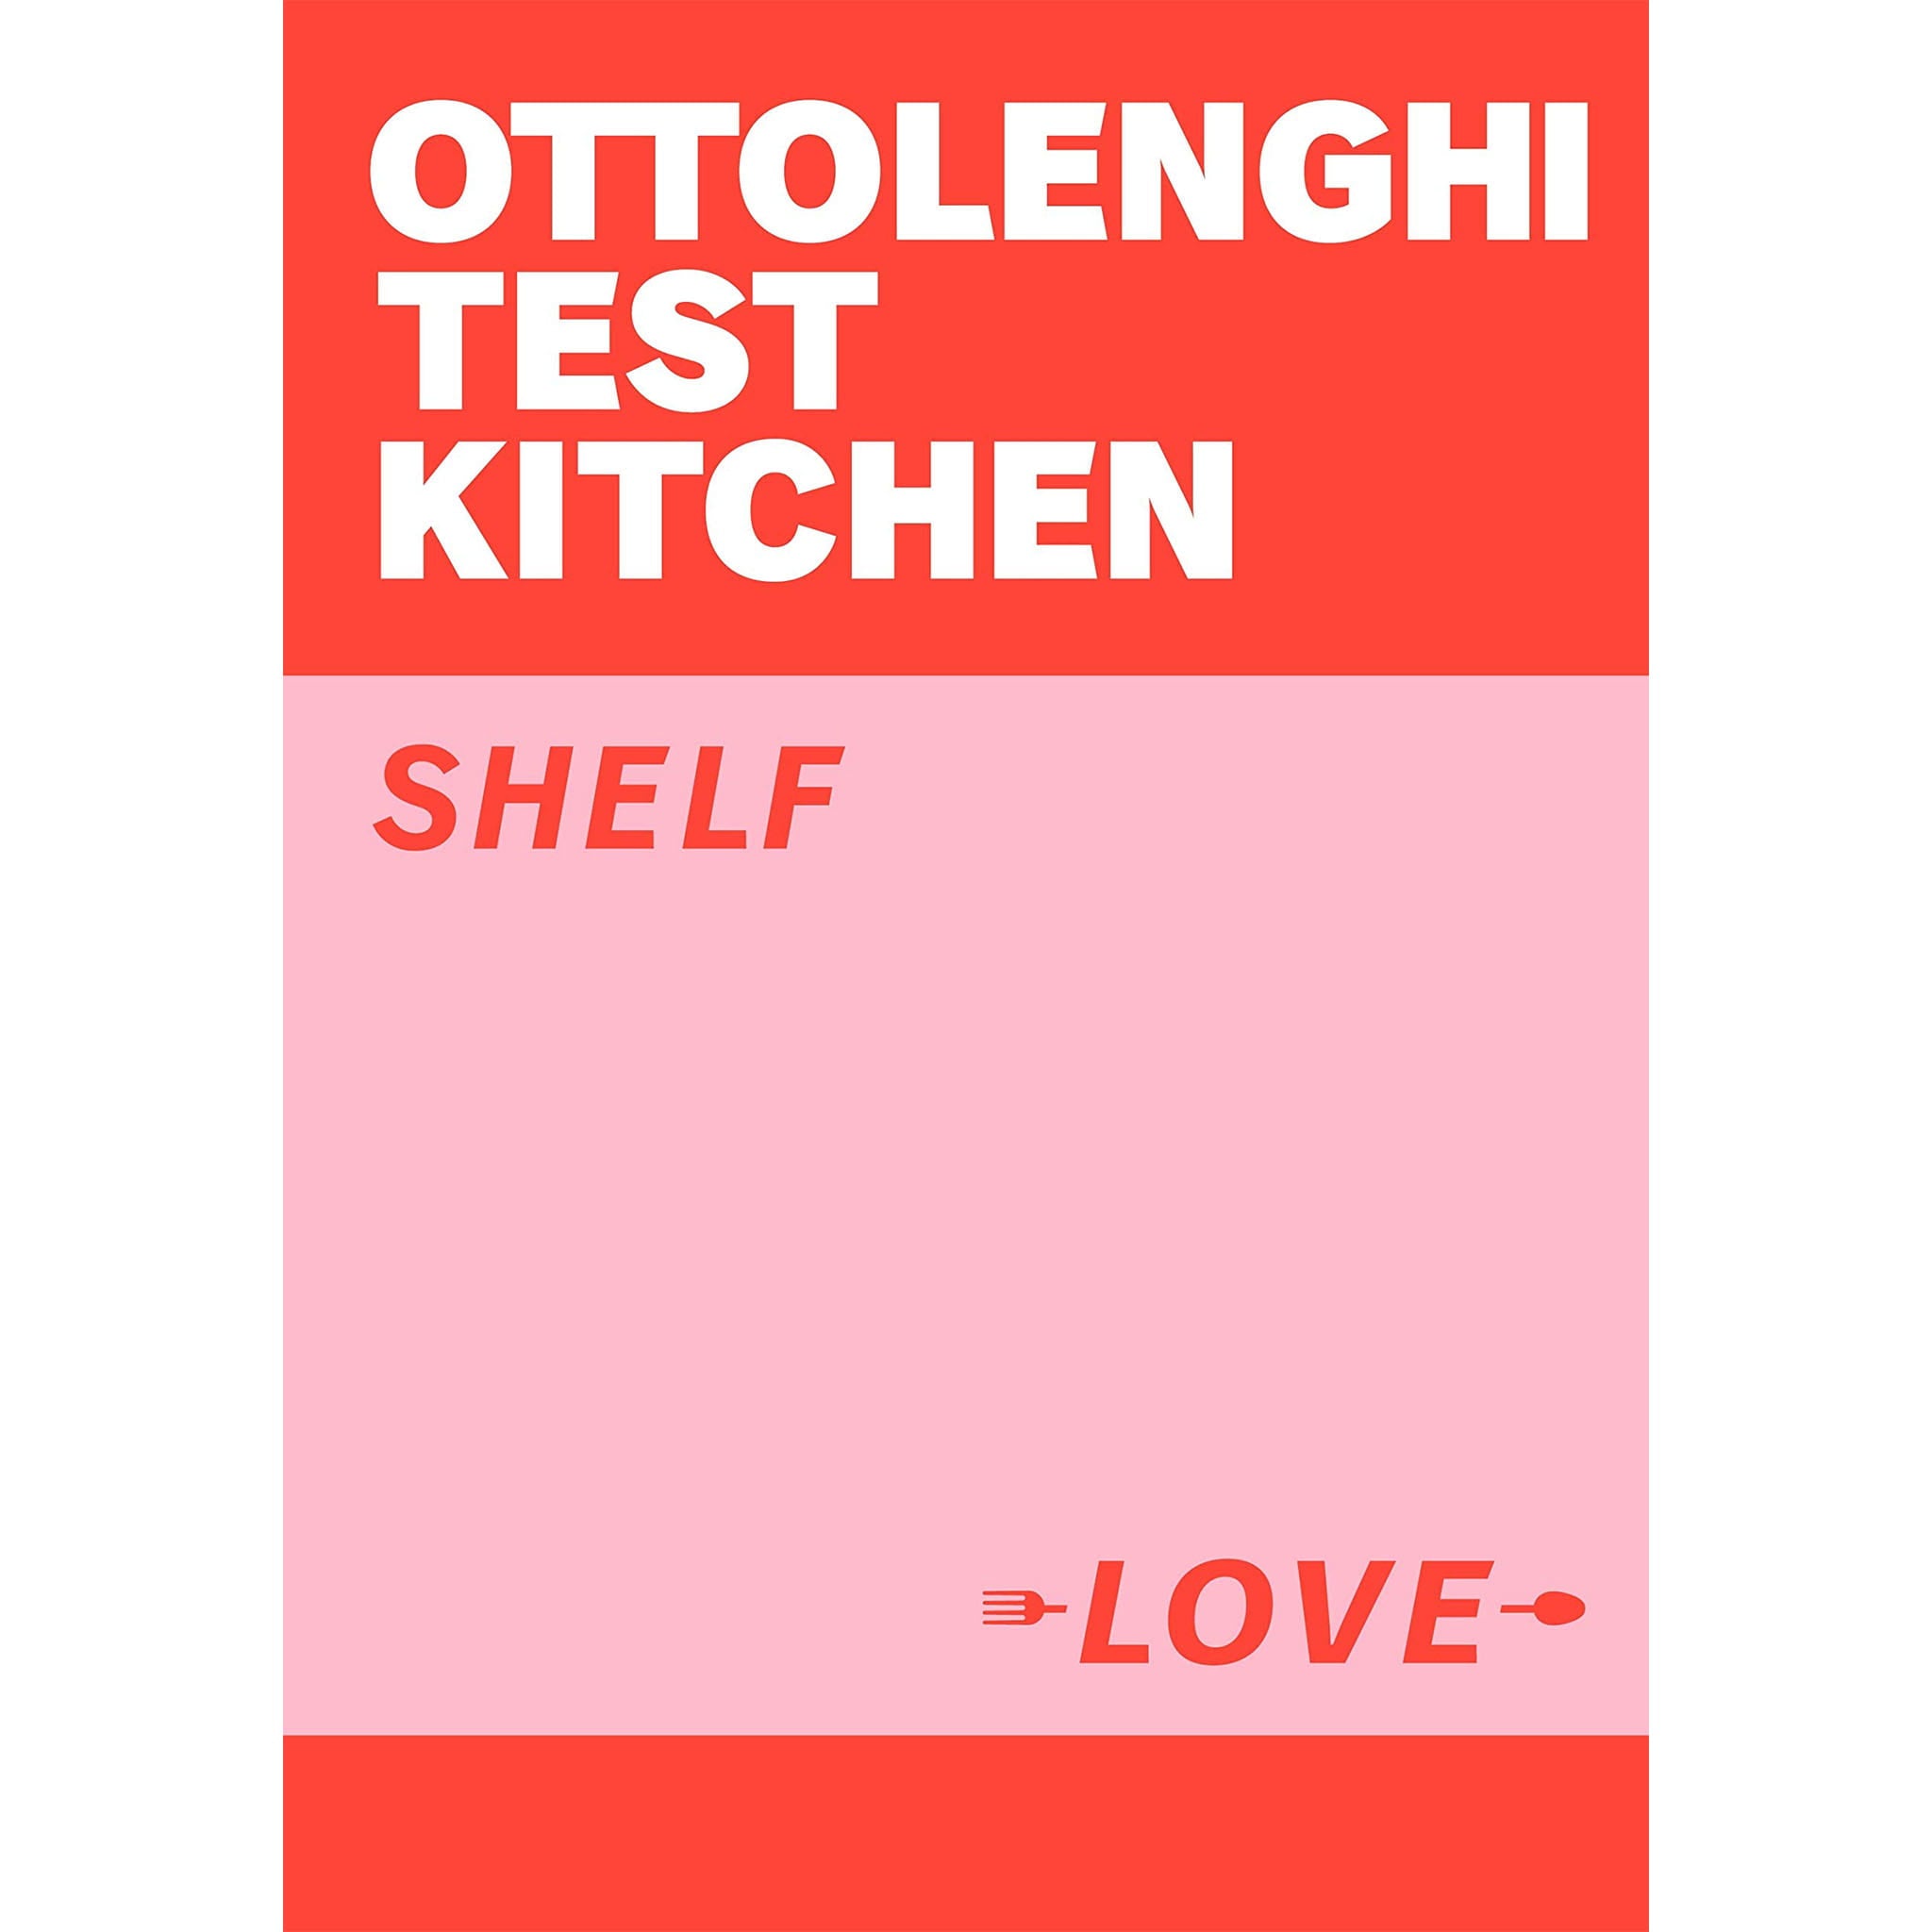 Ottolenghi Test Kitchen: Shelf Love cover